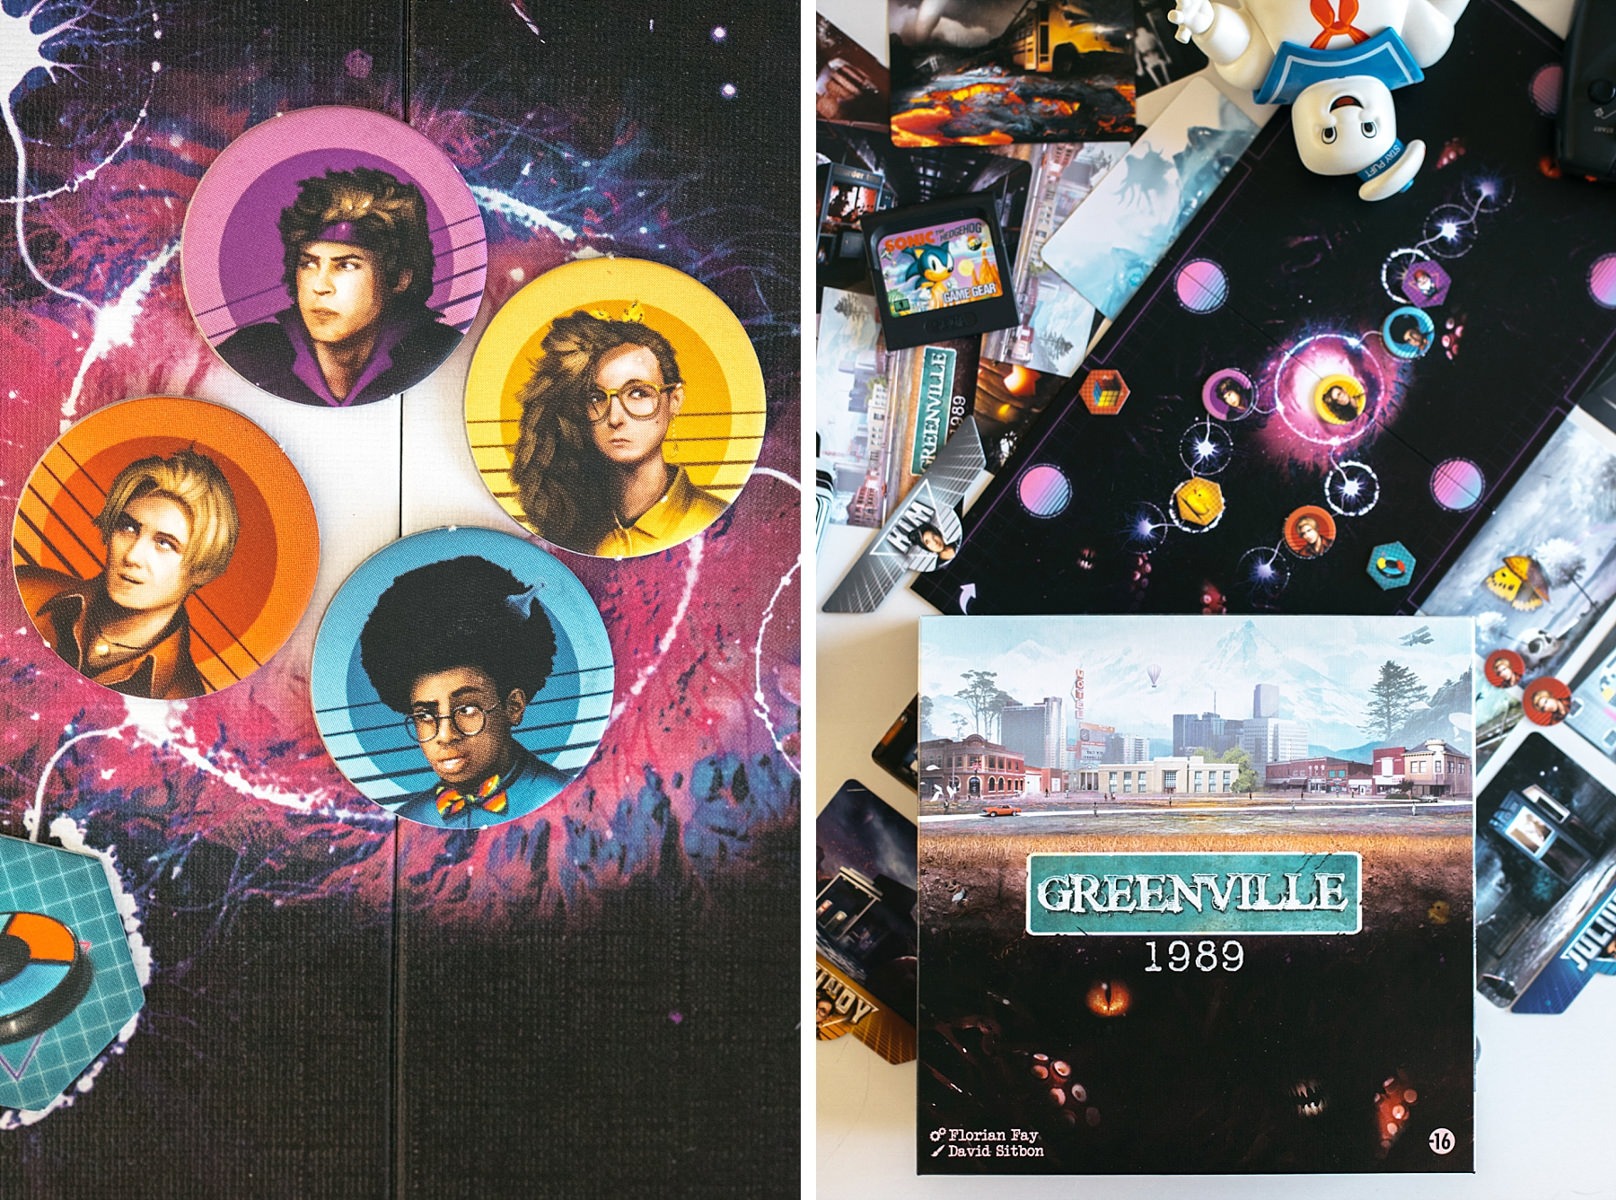 Greenville 1989 jeu de société